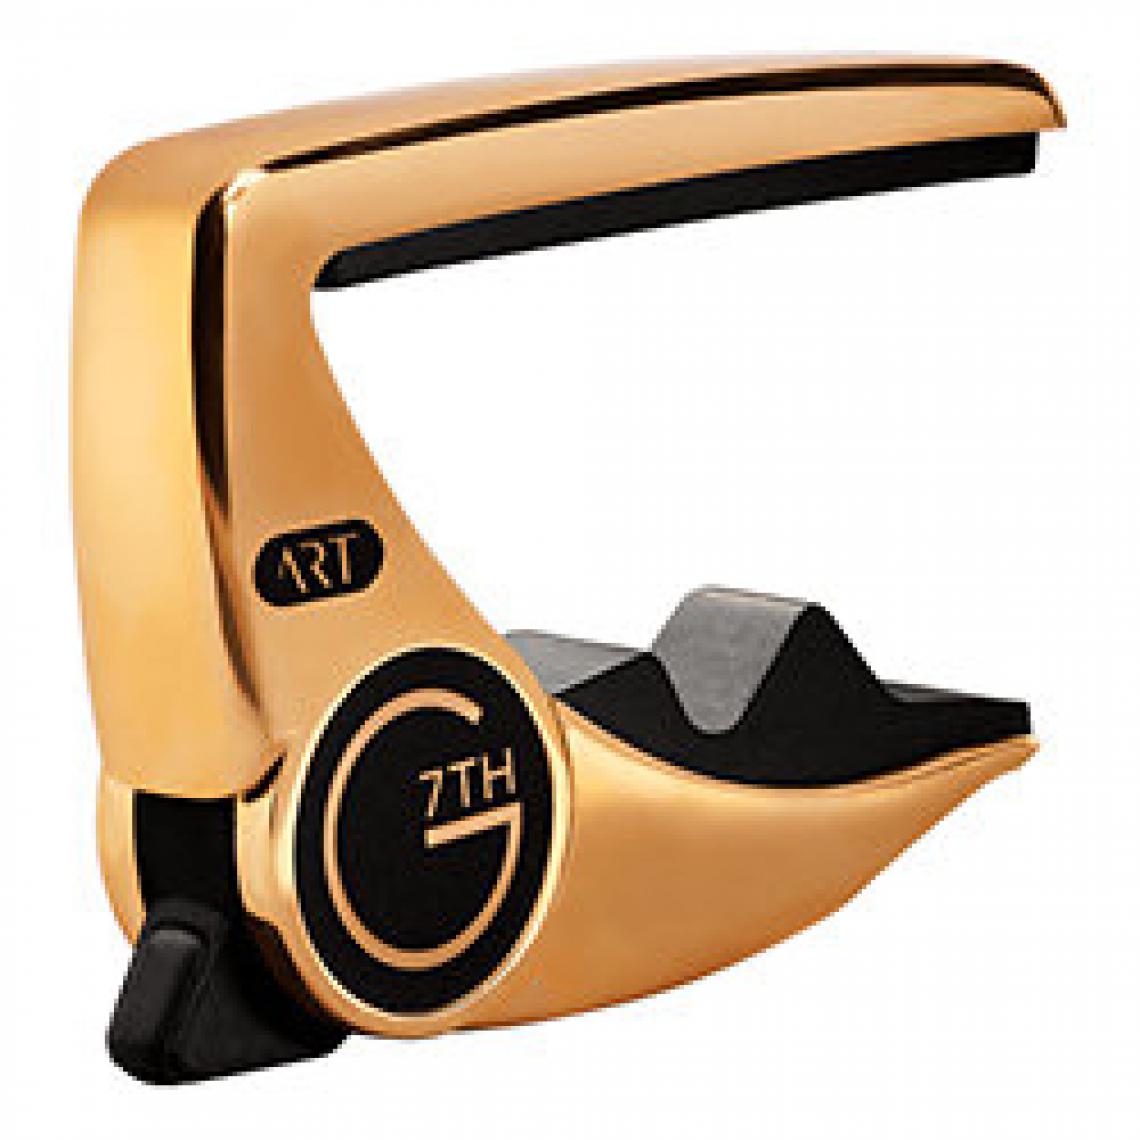 G7Th - G7thC81053 acoustique/électrique - Accessoires instruments à cordes